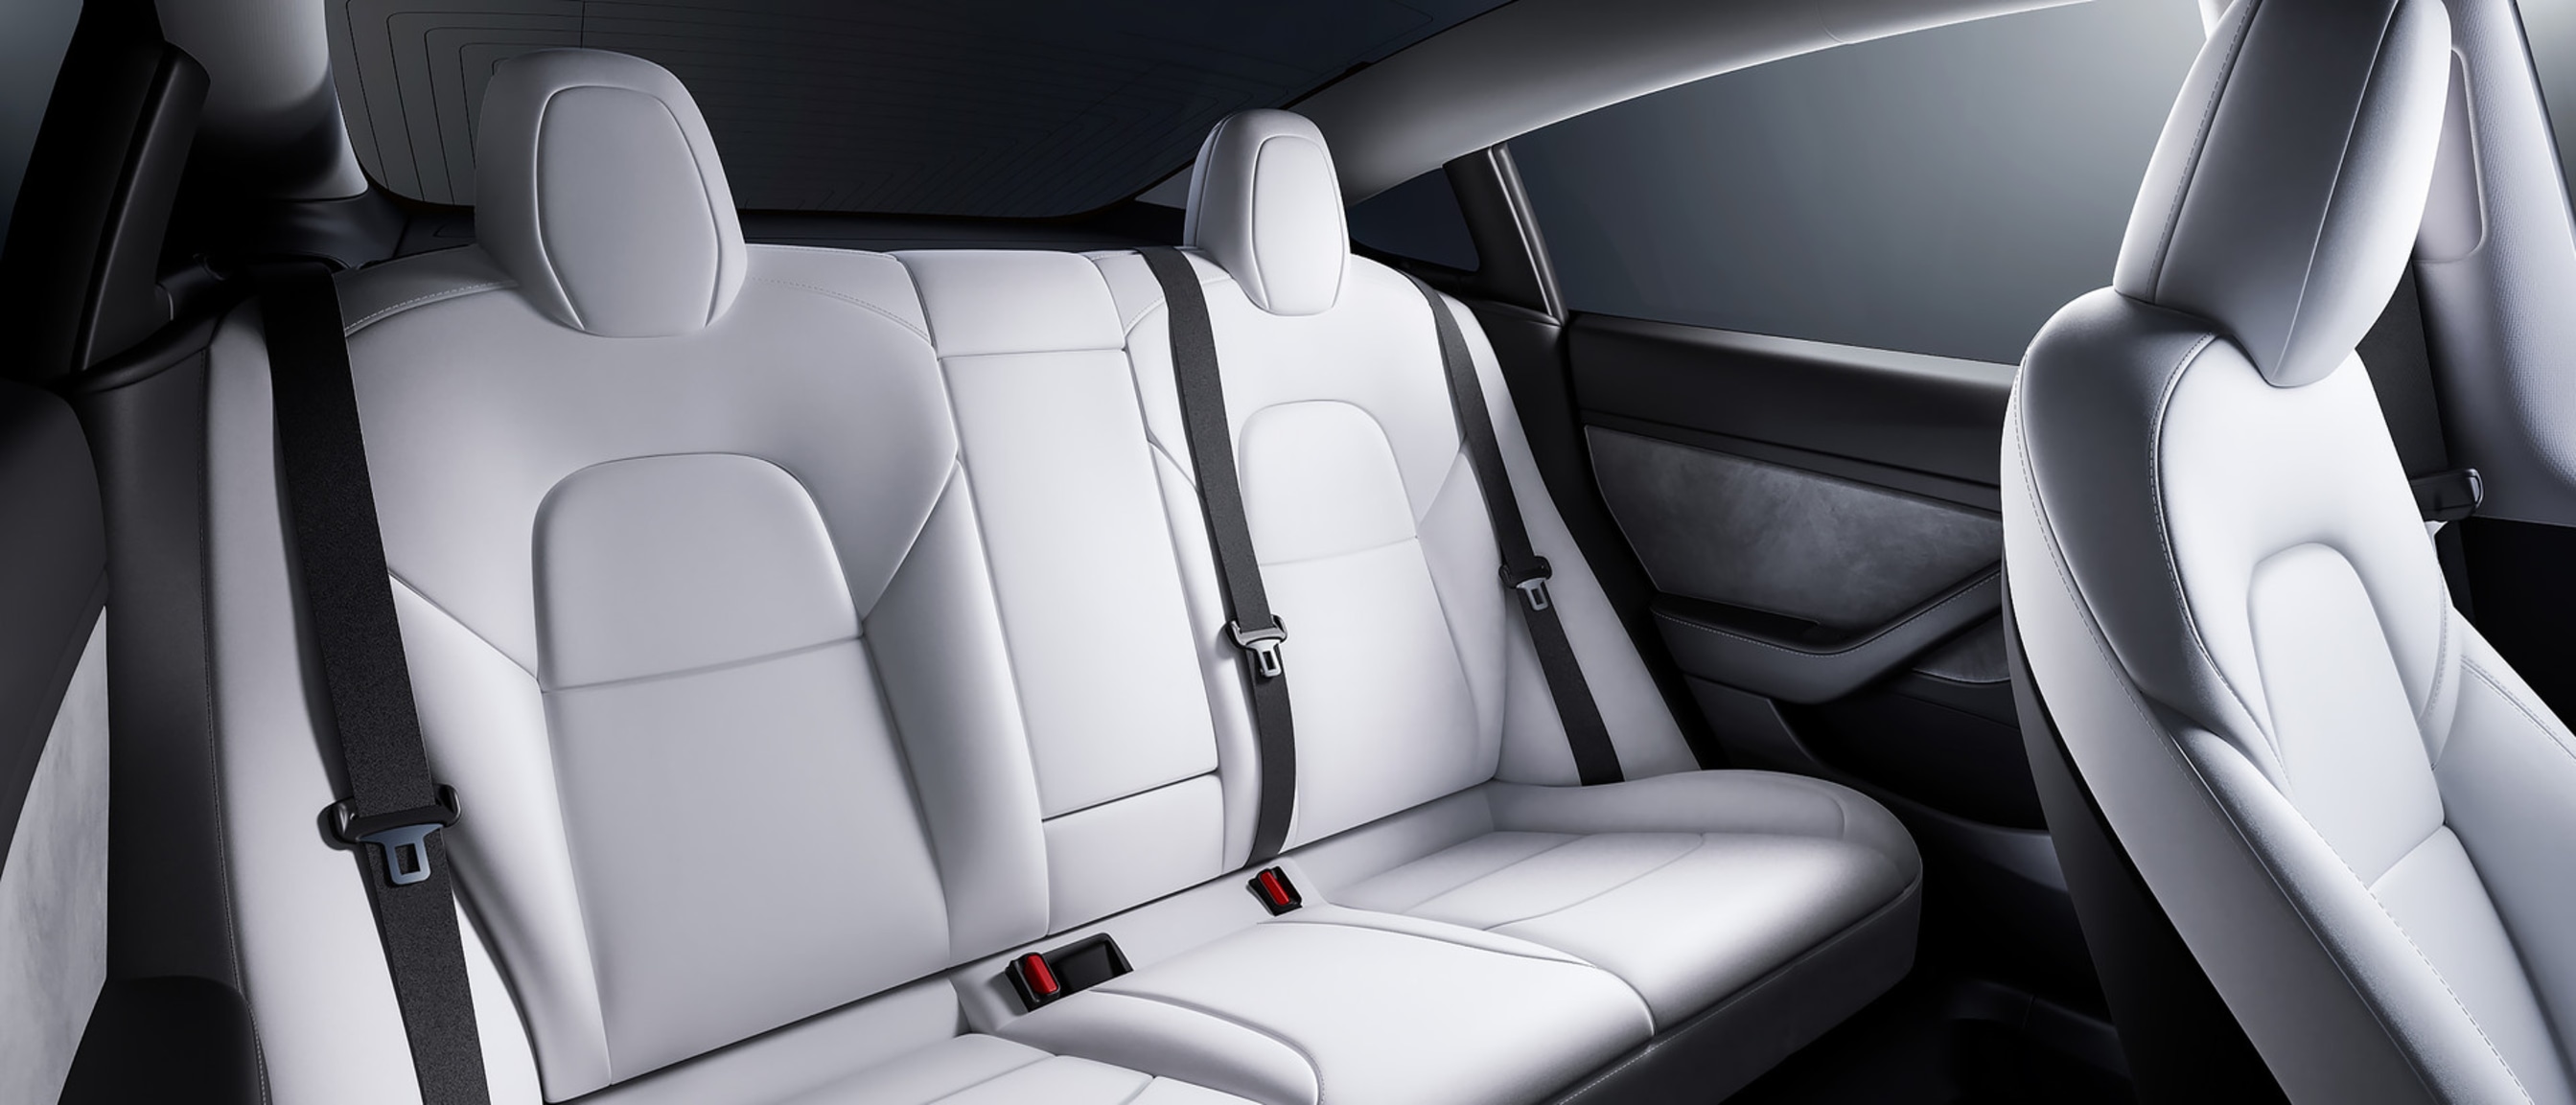 Blick auf den geräumigen Rücksitz eines Model 3 mit weißem Innenraum